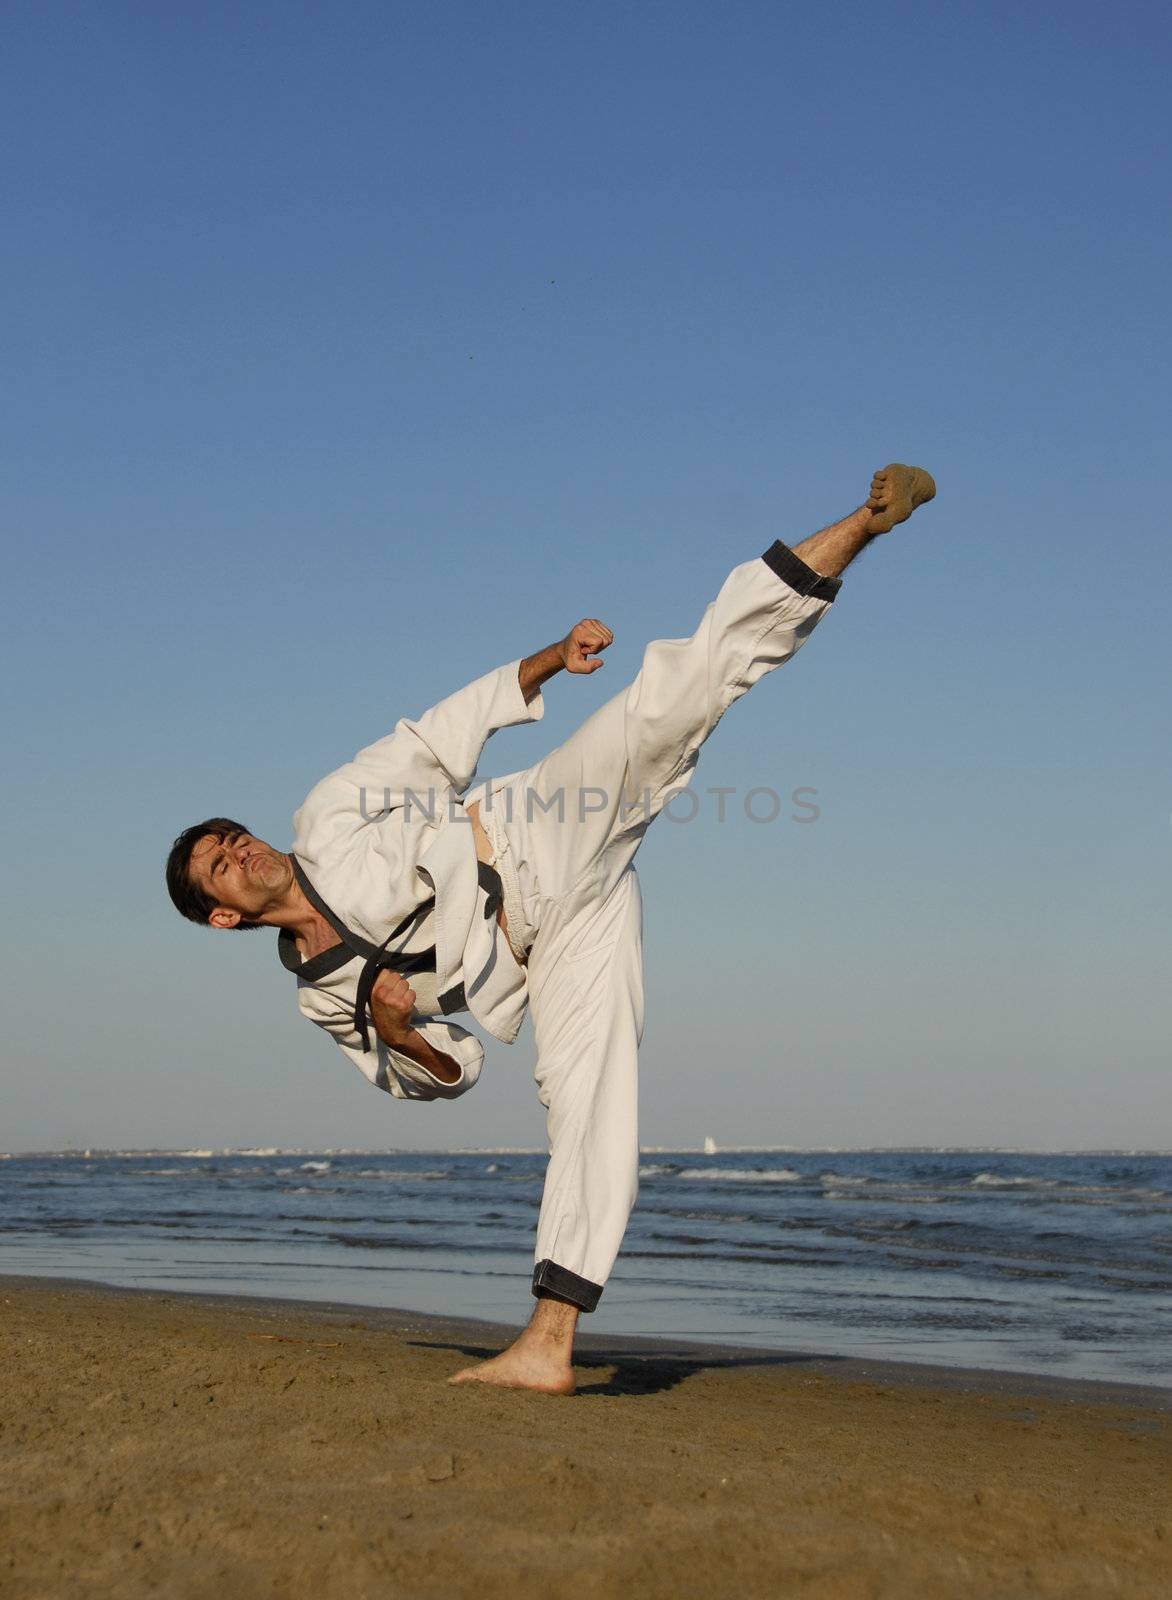 karate on the beach by cynoclub